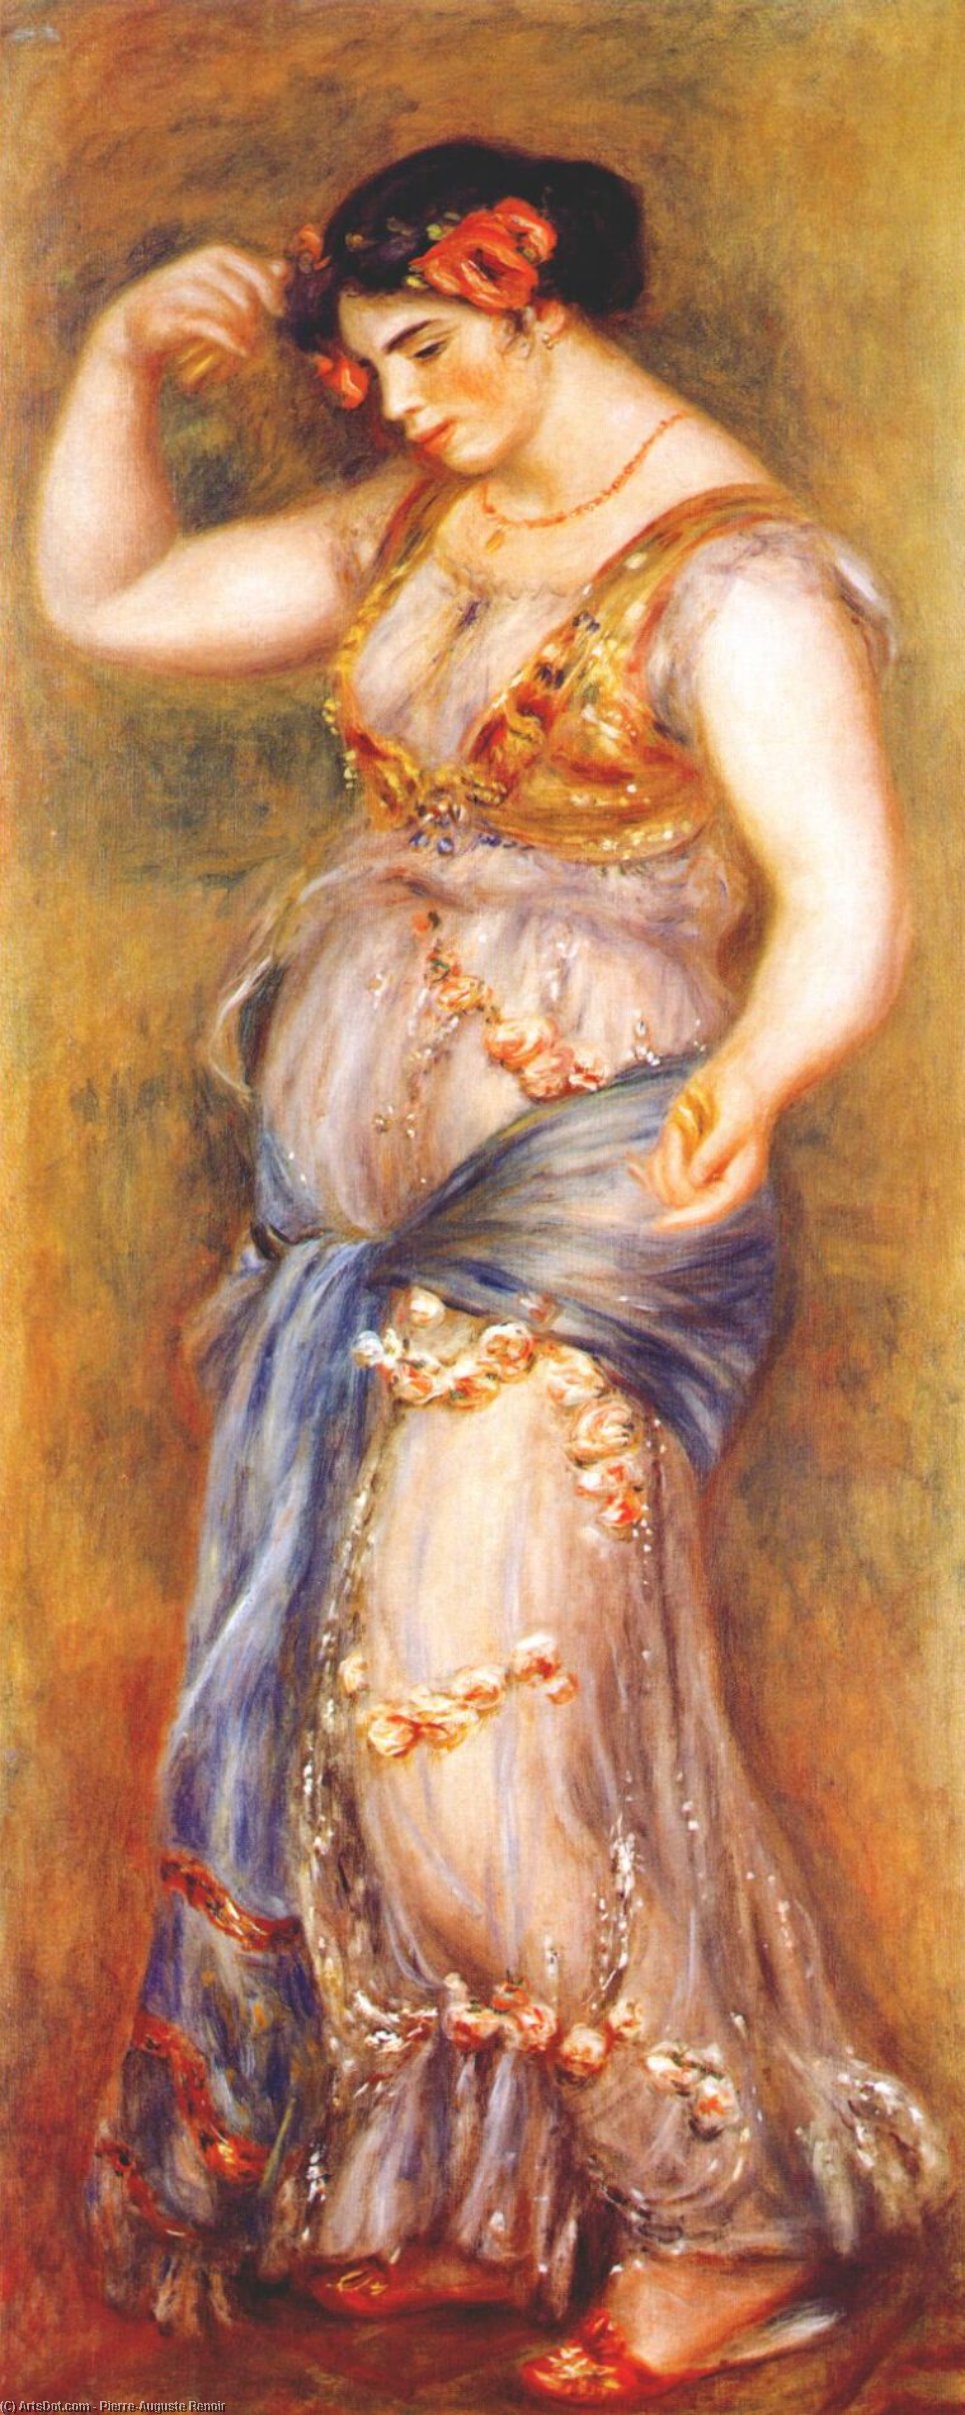 WikiOO.org - אנציקלופדיה לאמנויות יפות - ציור, יצירות אמנות Pierre-Auguste Renoir - Dancer with Castanettes